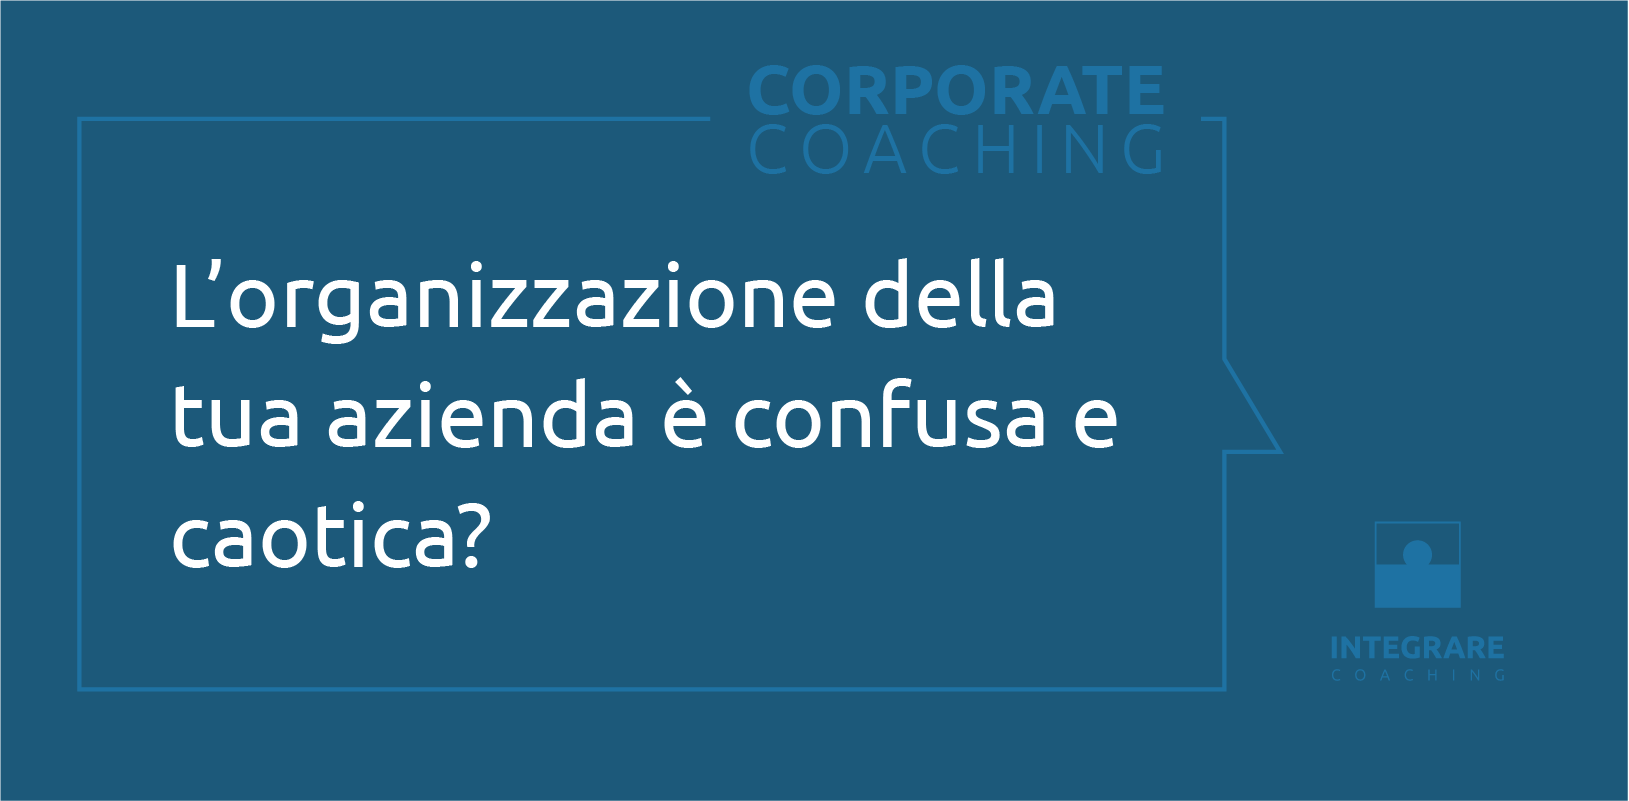 Corporate Coaching - 4/6